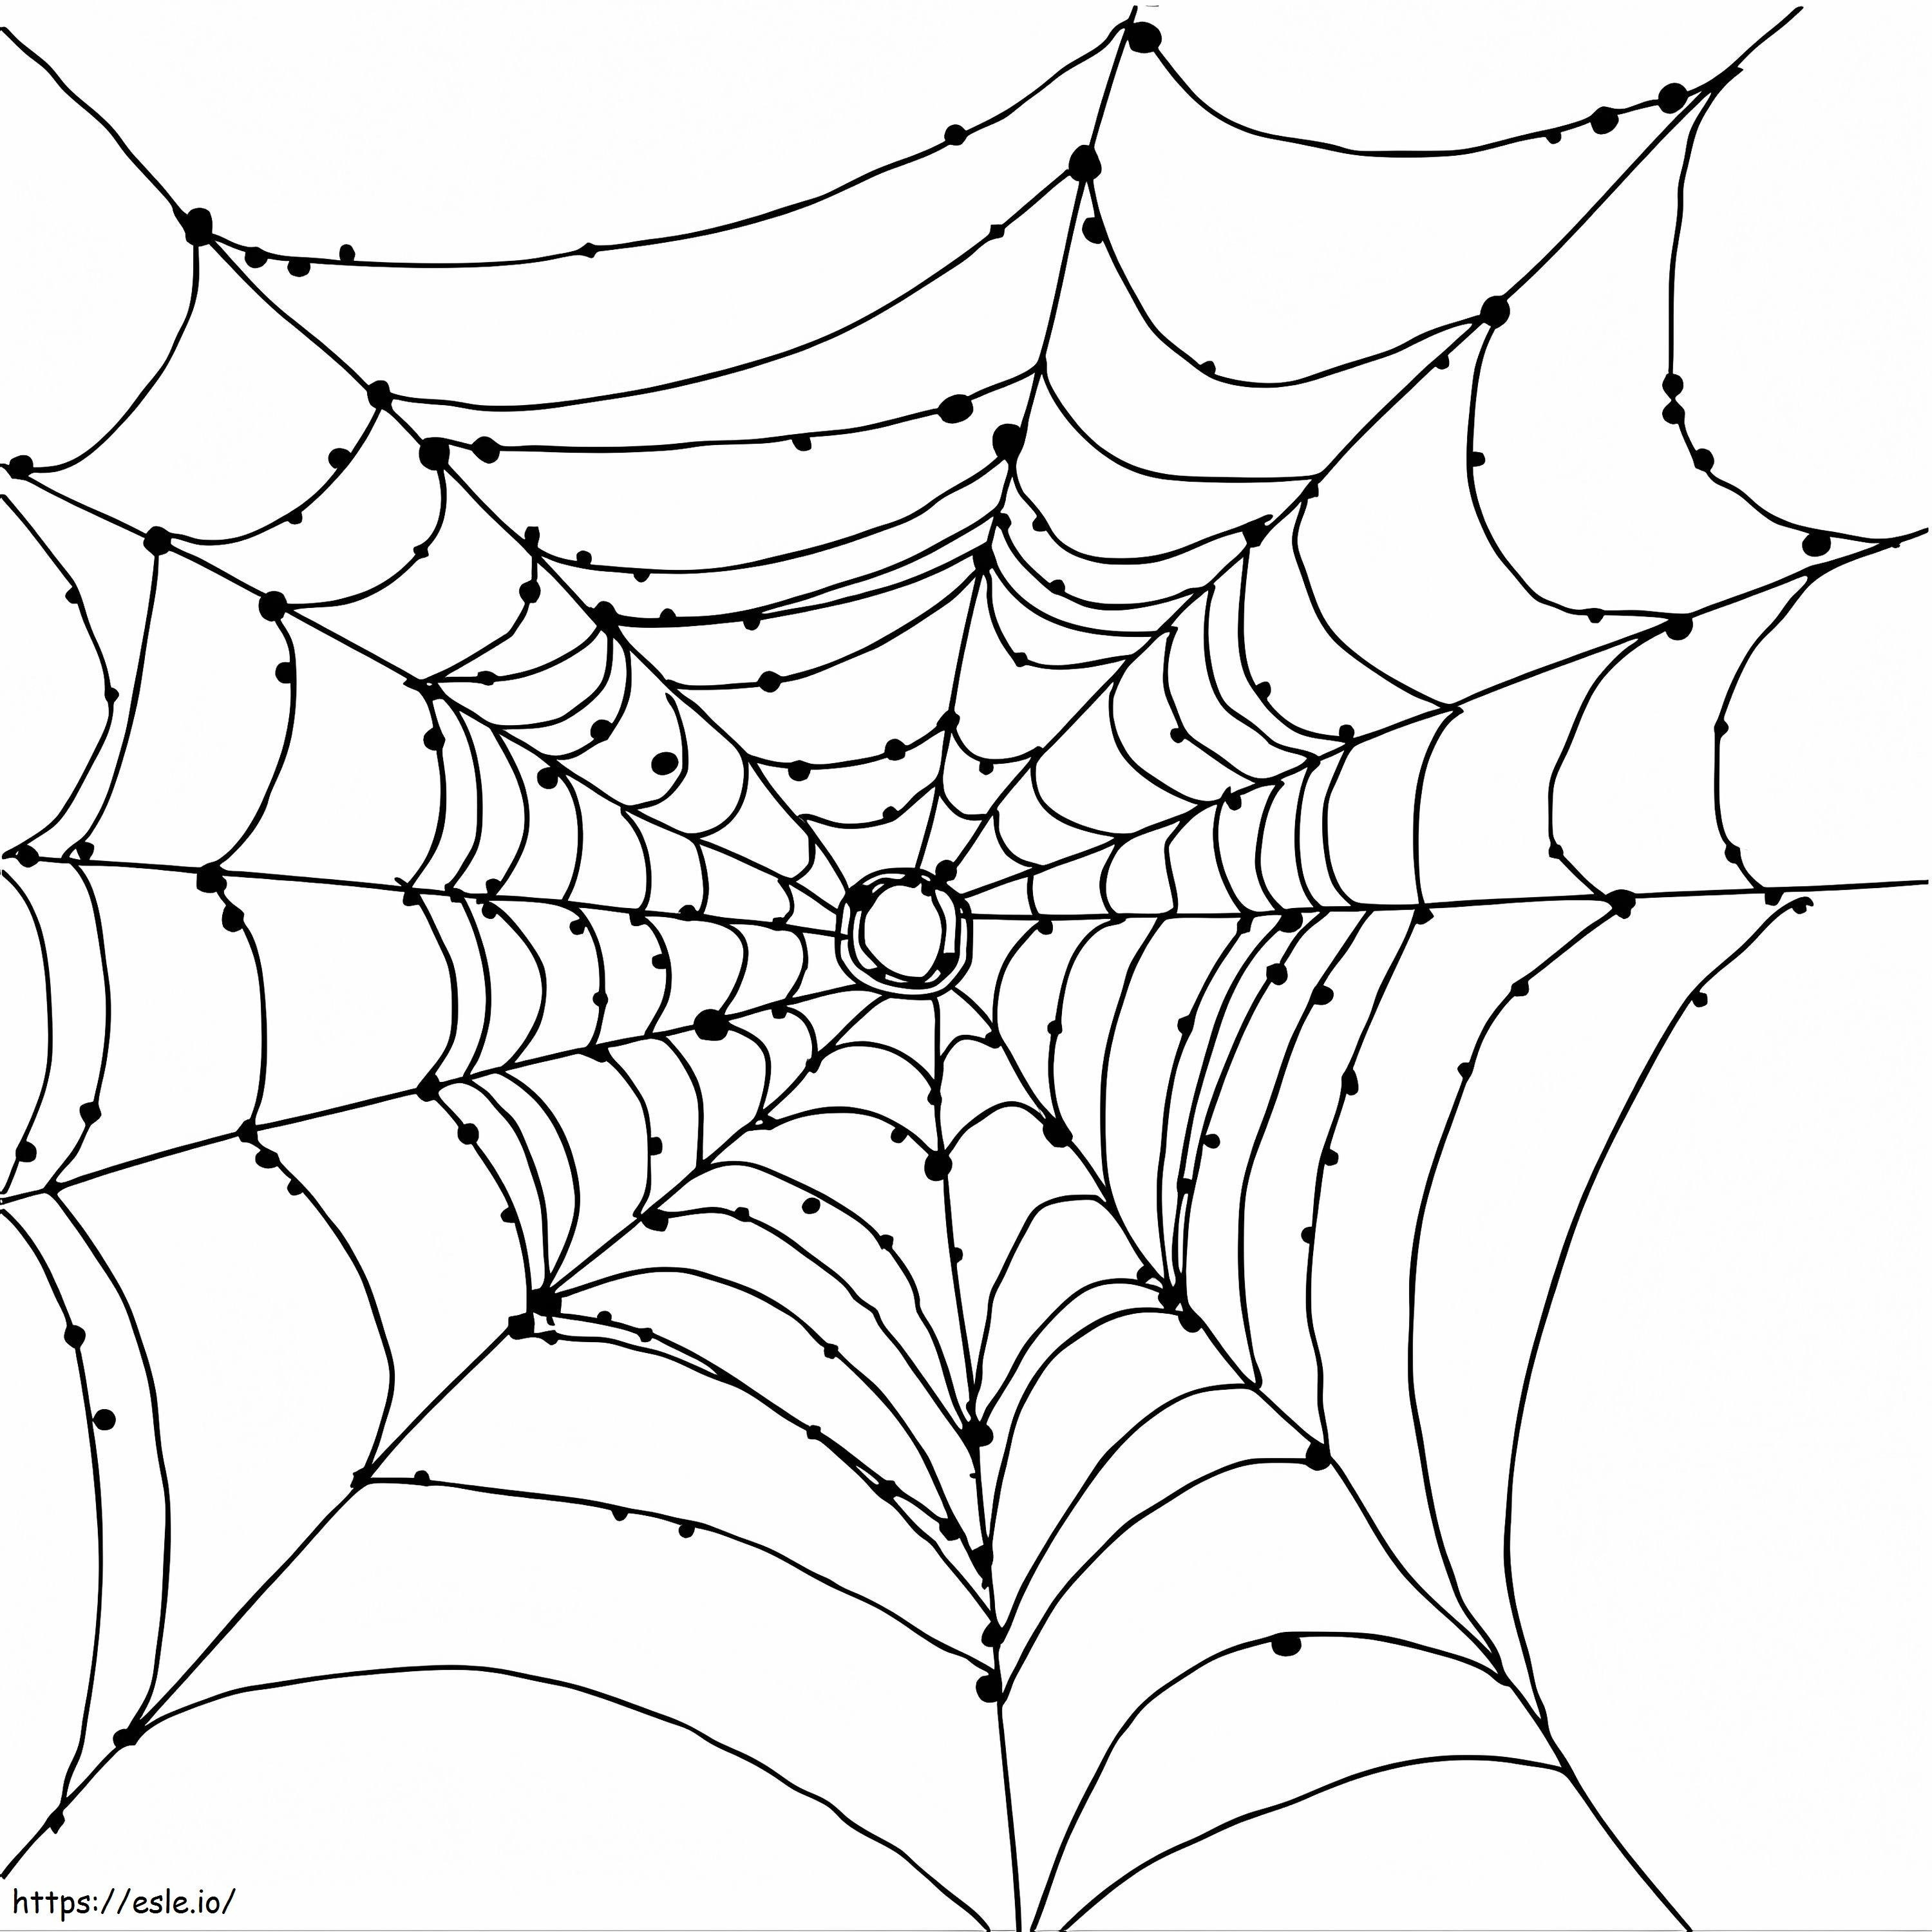 Kostenloses Spinnennetz ausmalbilder